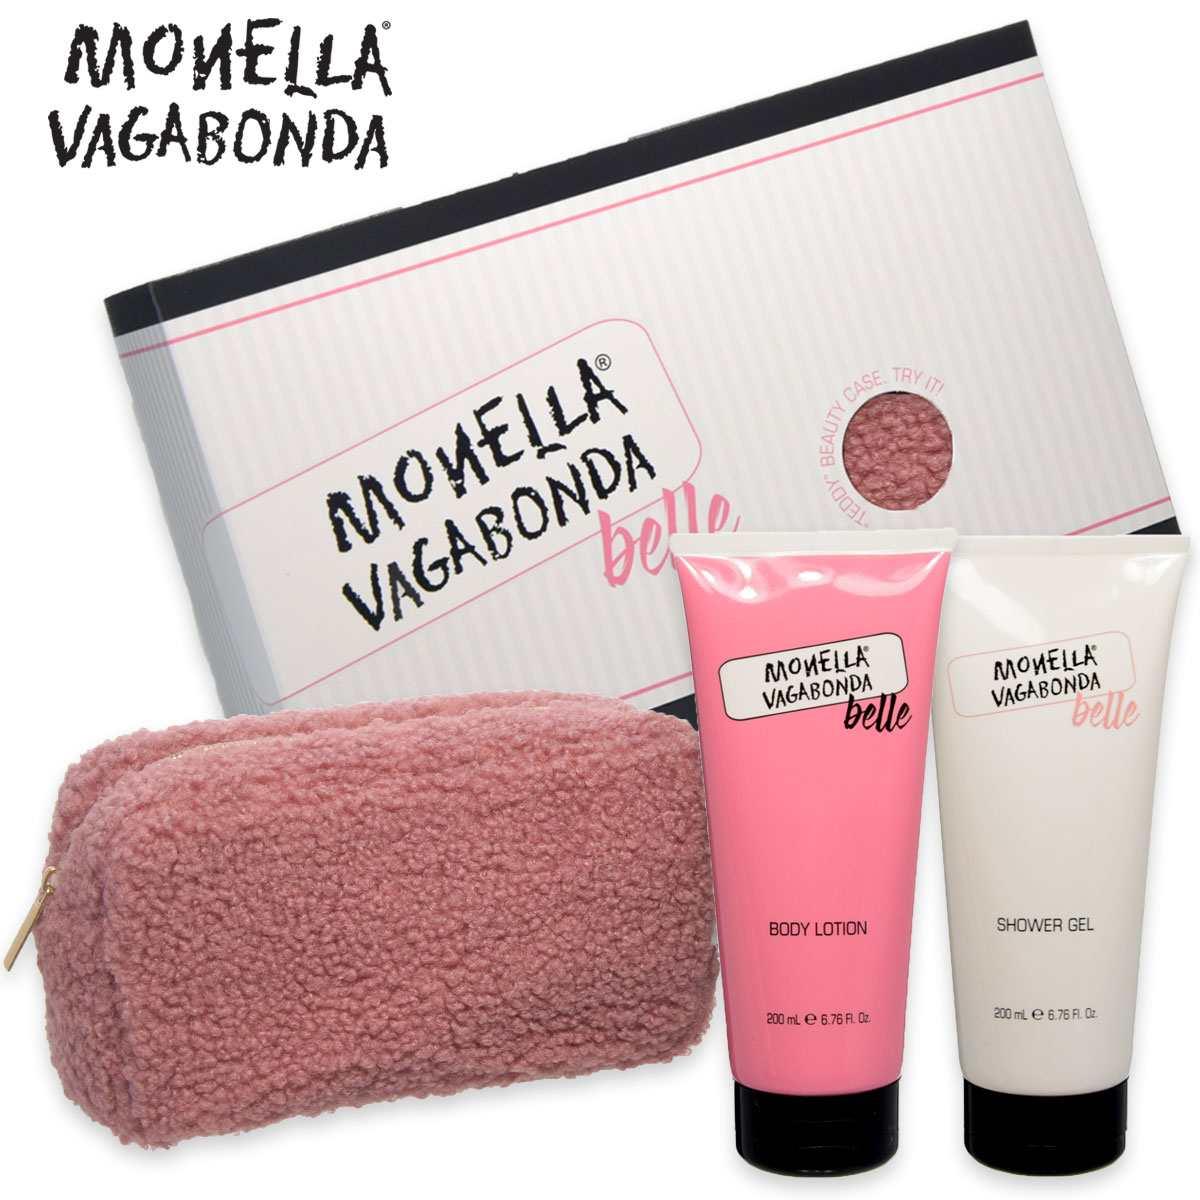 Monella Vagabonda Belle Gift Set con Teddy Beauty Case | RossoLacca